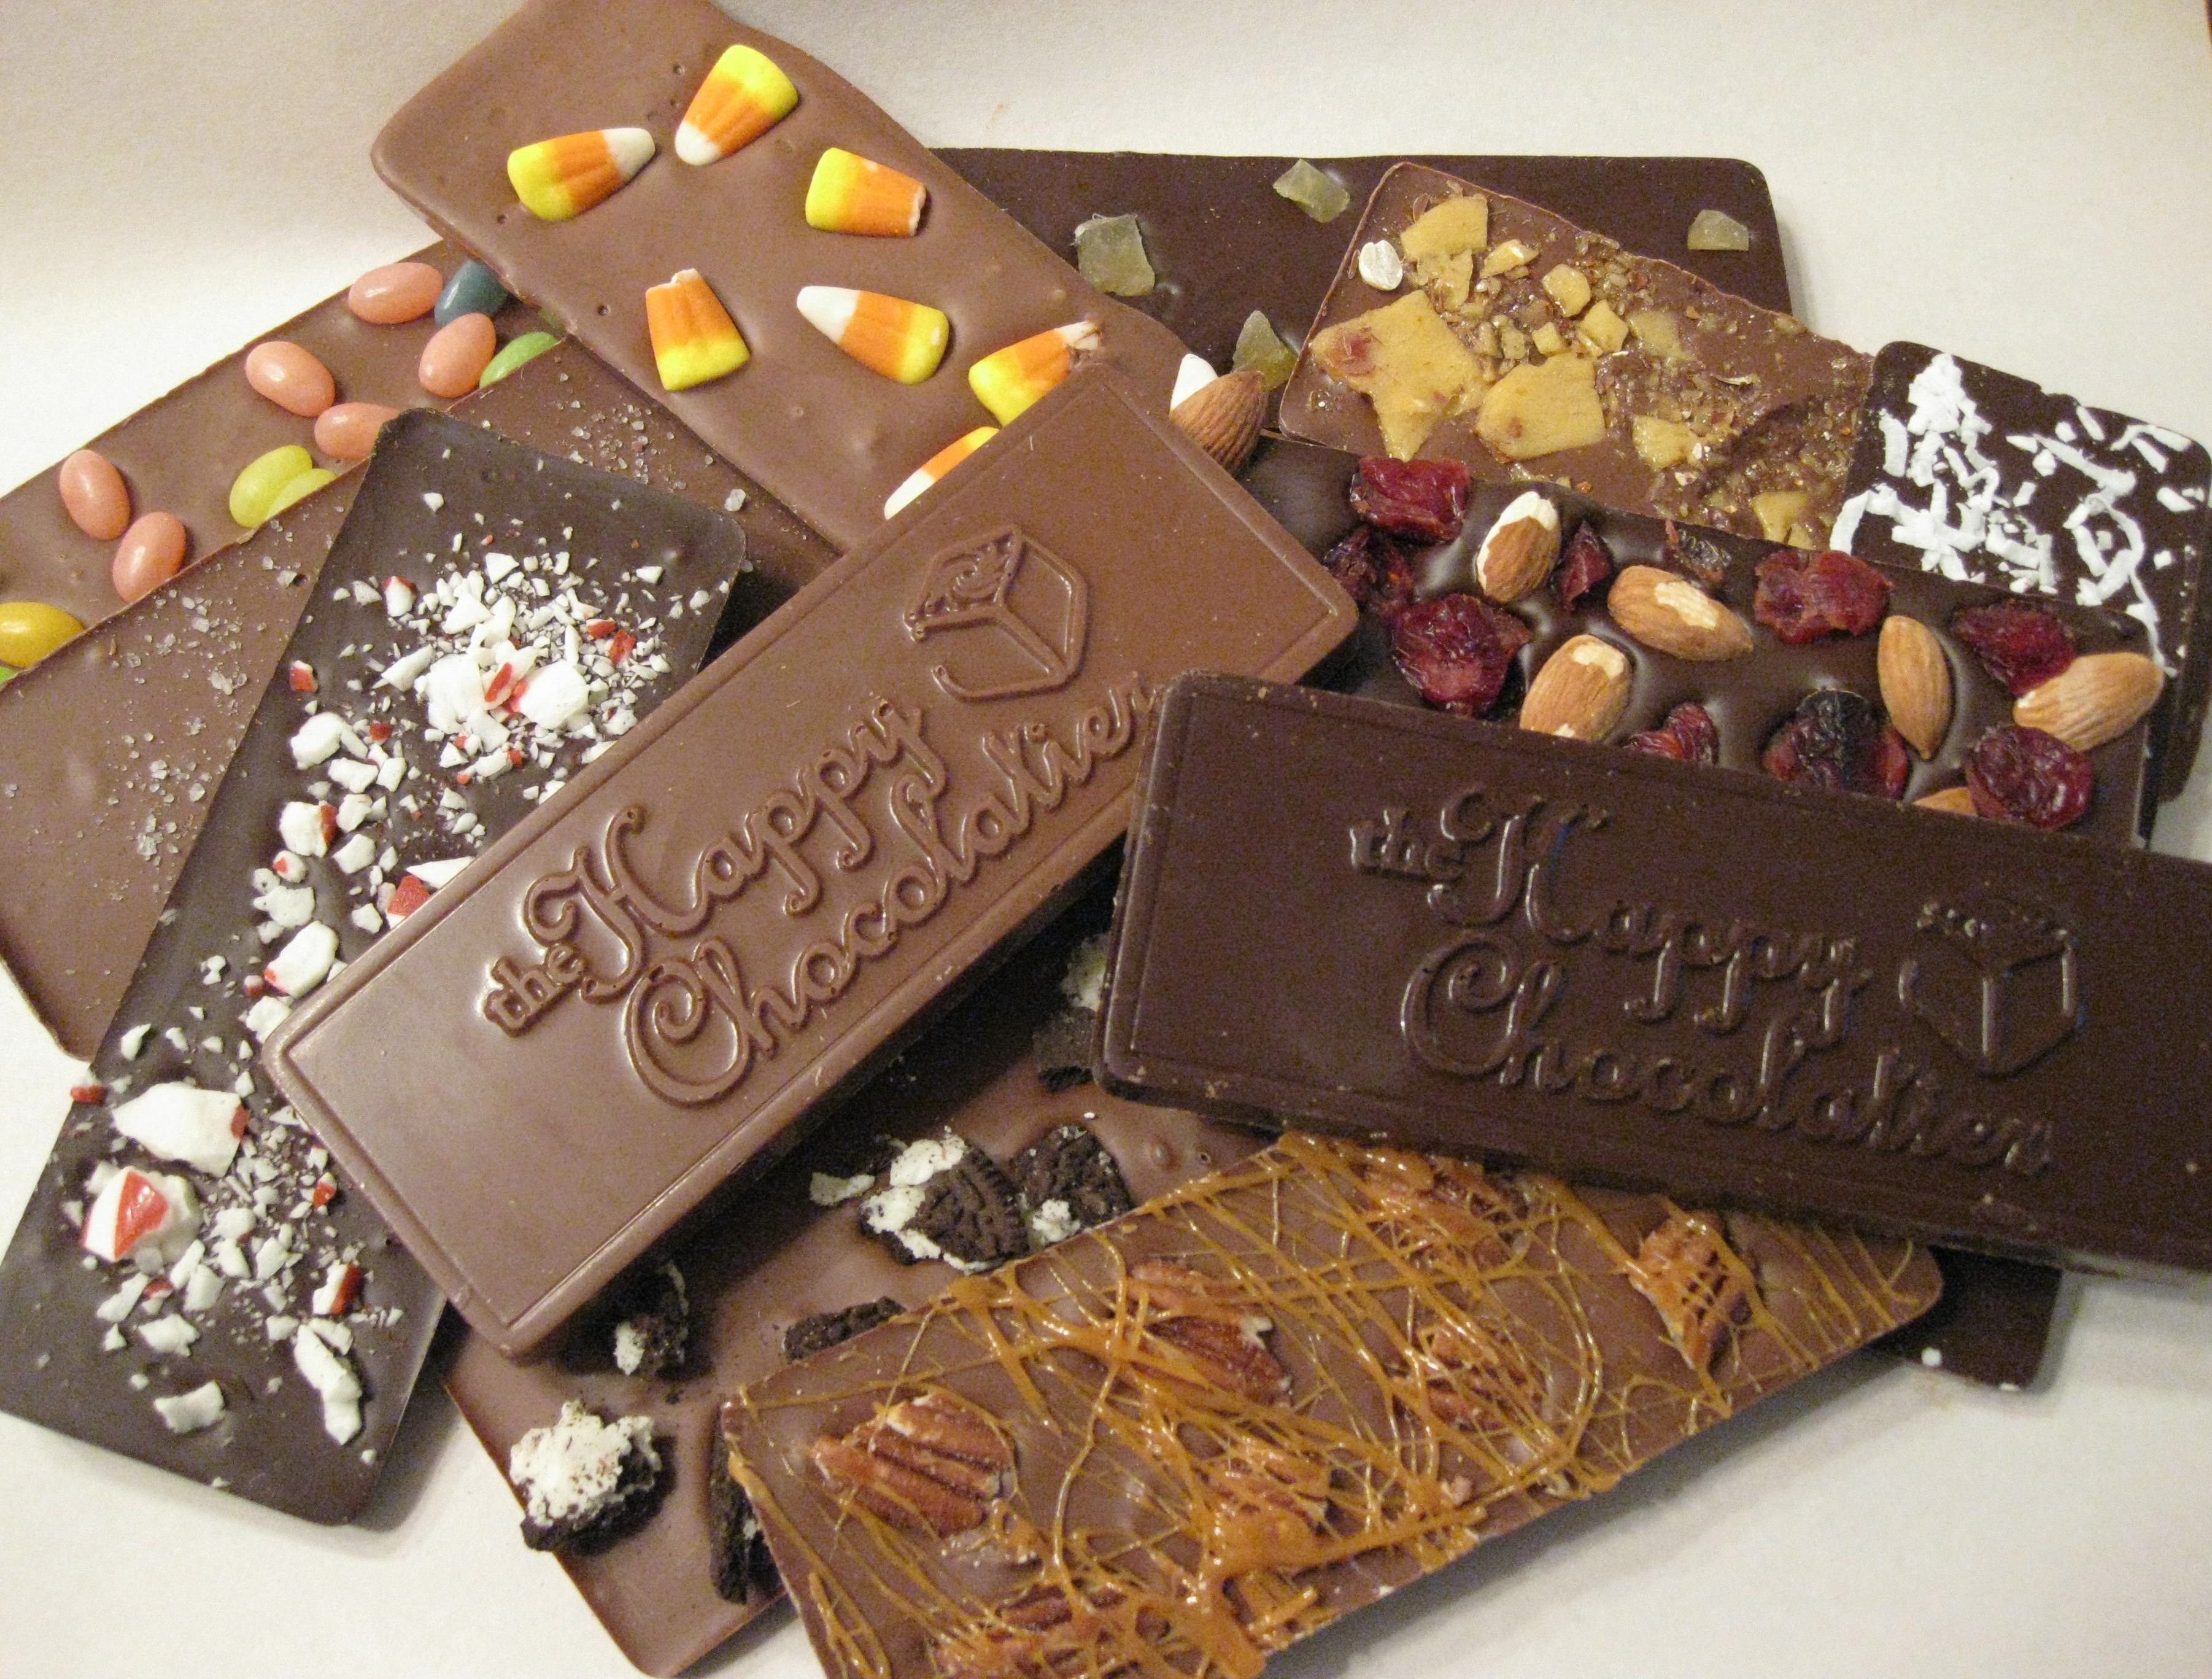 Шоколад купить в махачкале. Бельгийский шоколад плитка. Шоколадная плитка Derby. Derby шоколад плитка. Необычный шоколад.